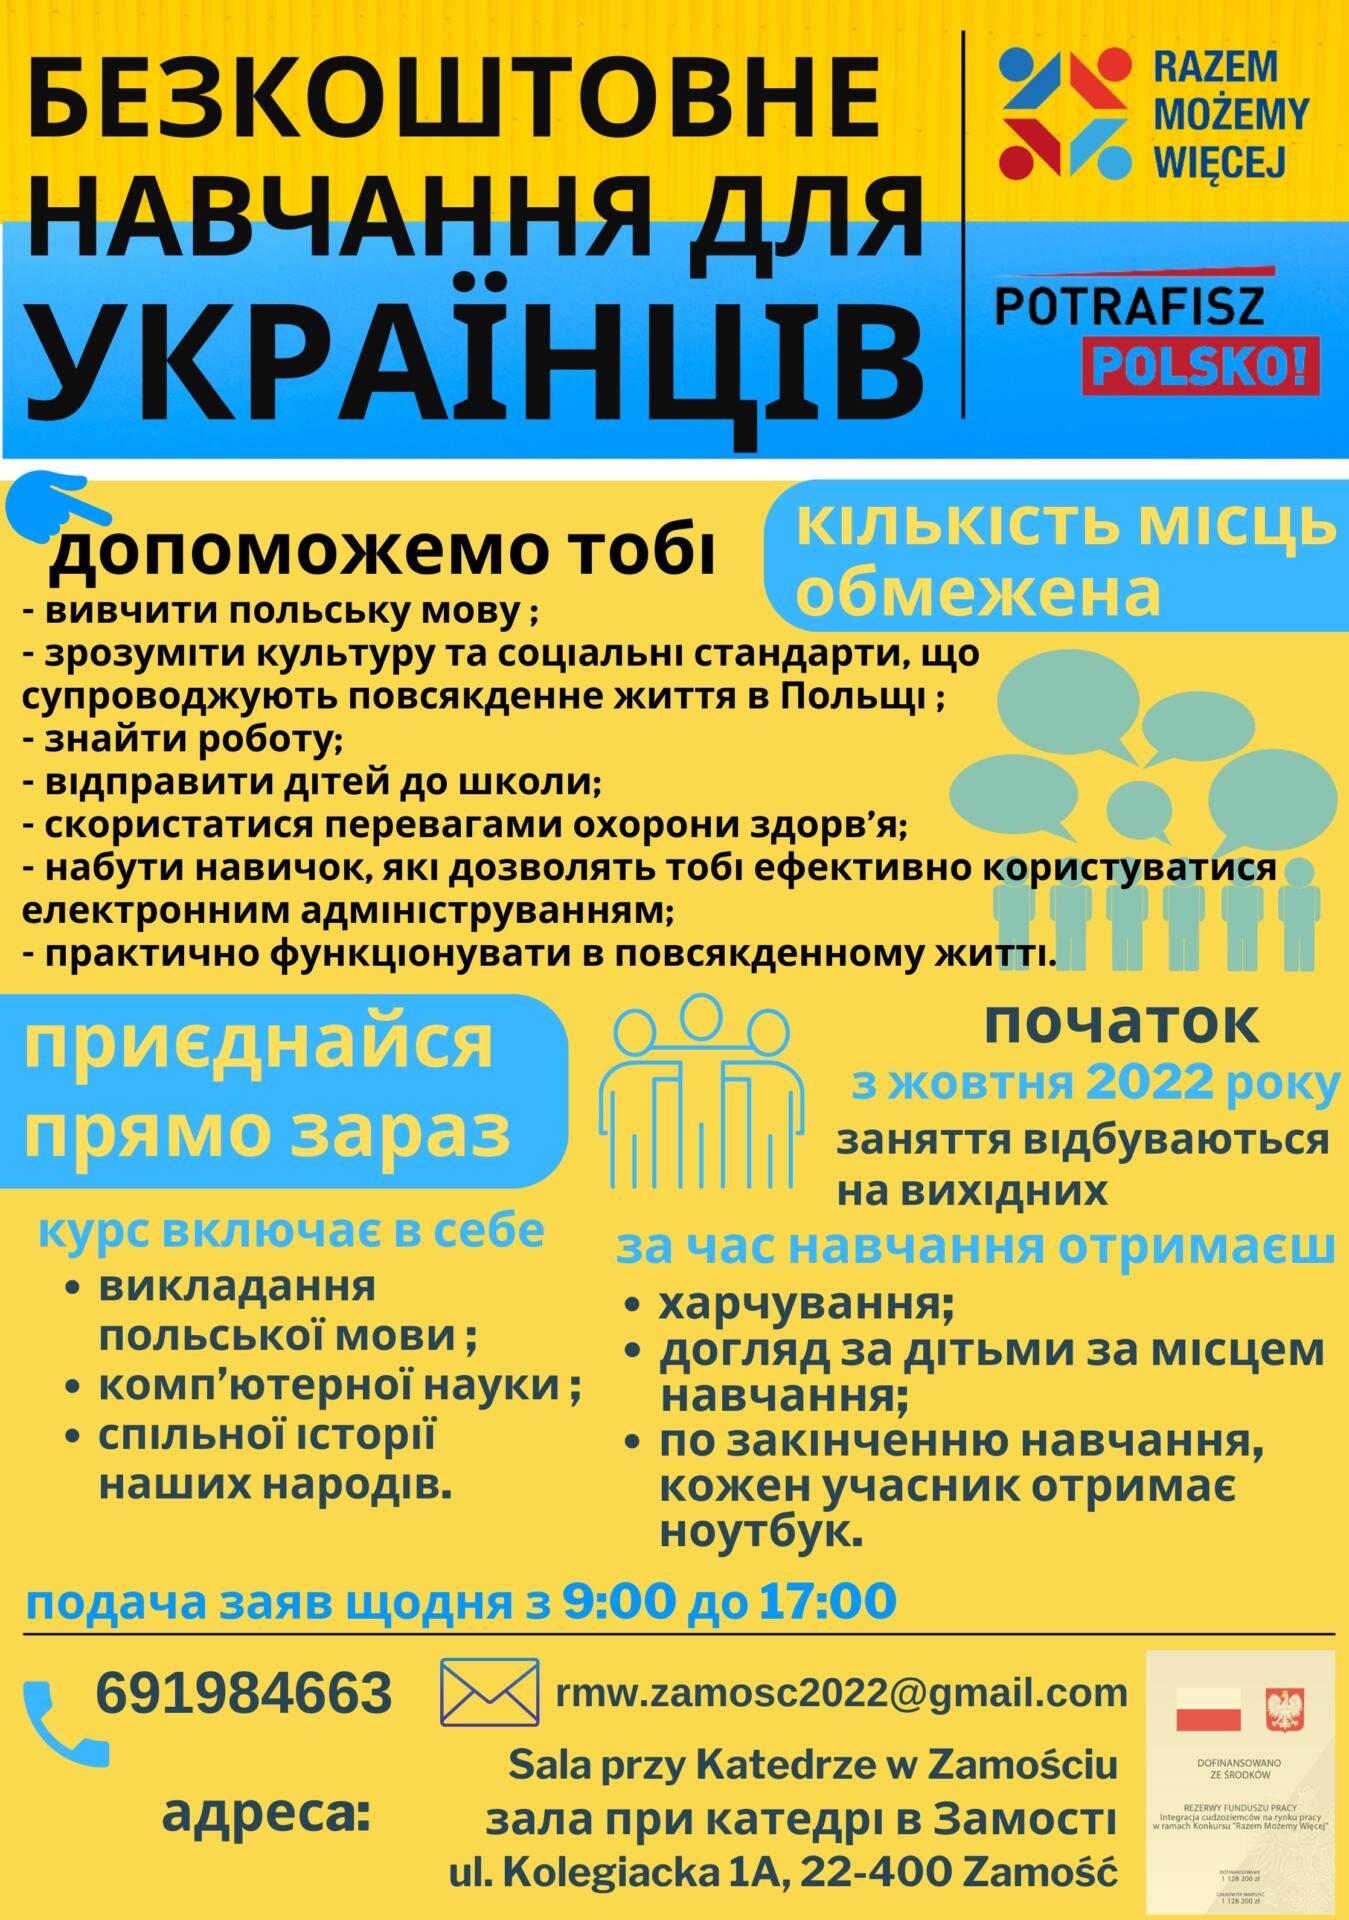 informacja dla obywateli ukrainy Bezpłatne szkolenia dla obywateli Ukrainy